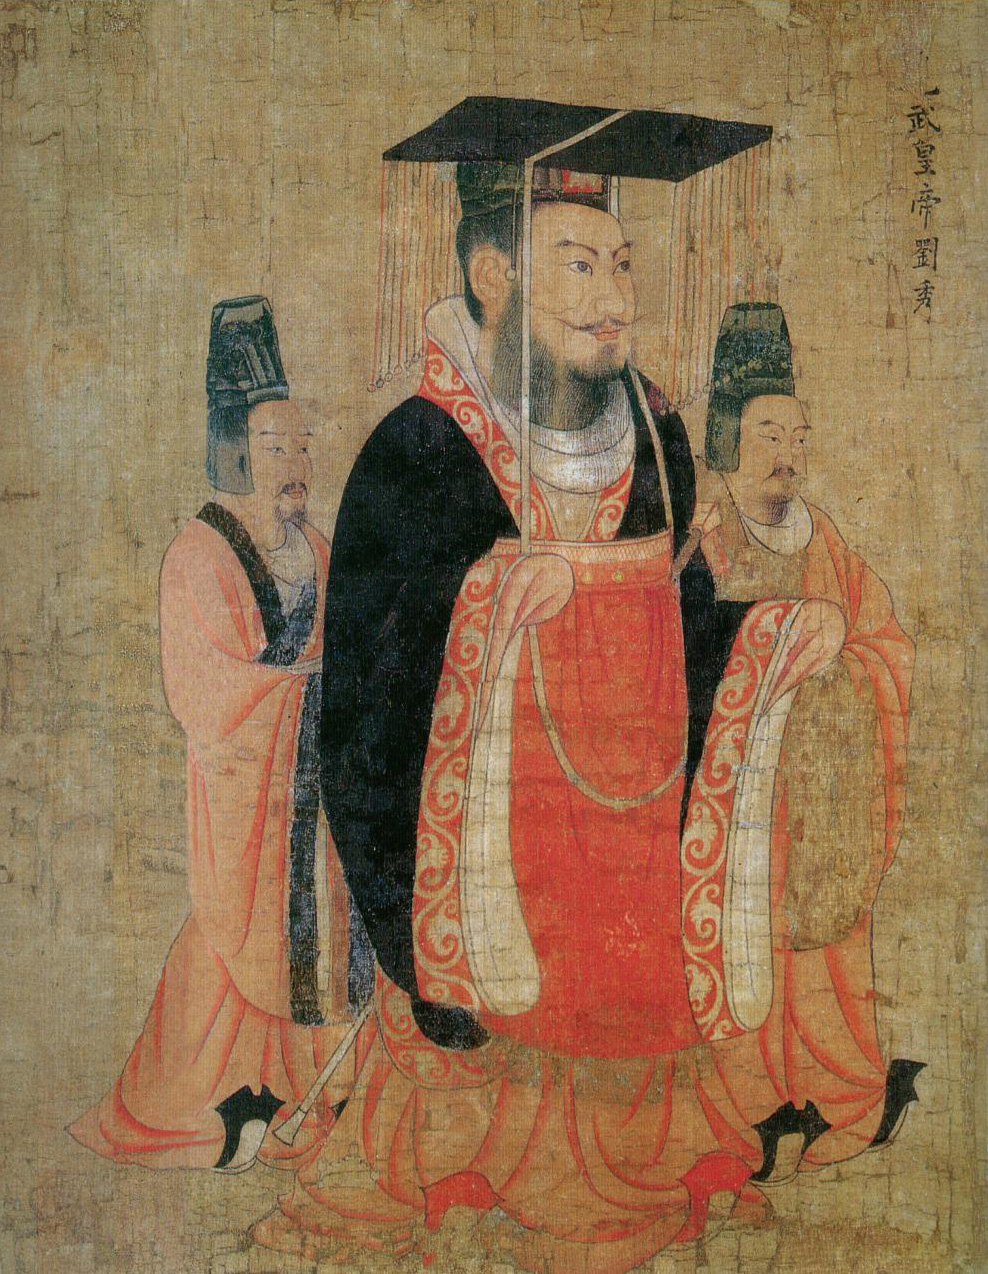 Populiariausias Qin ir Han dinastijų menas, skulptūros ir paveikslai rinkoje